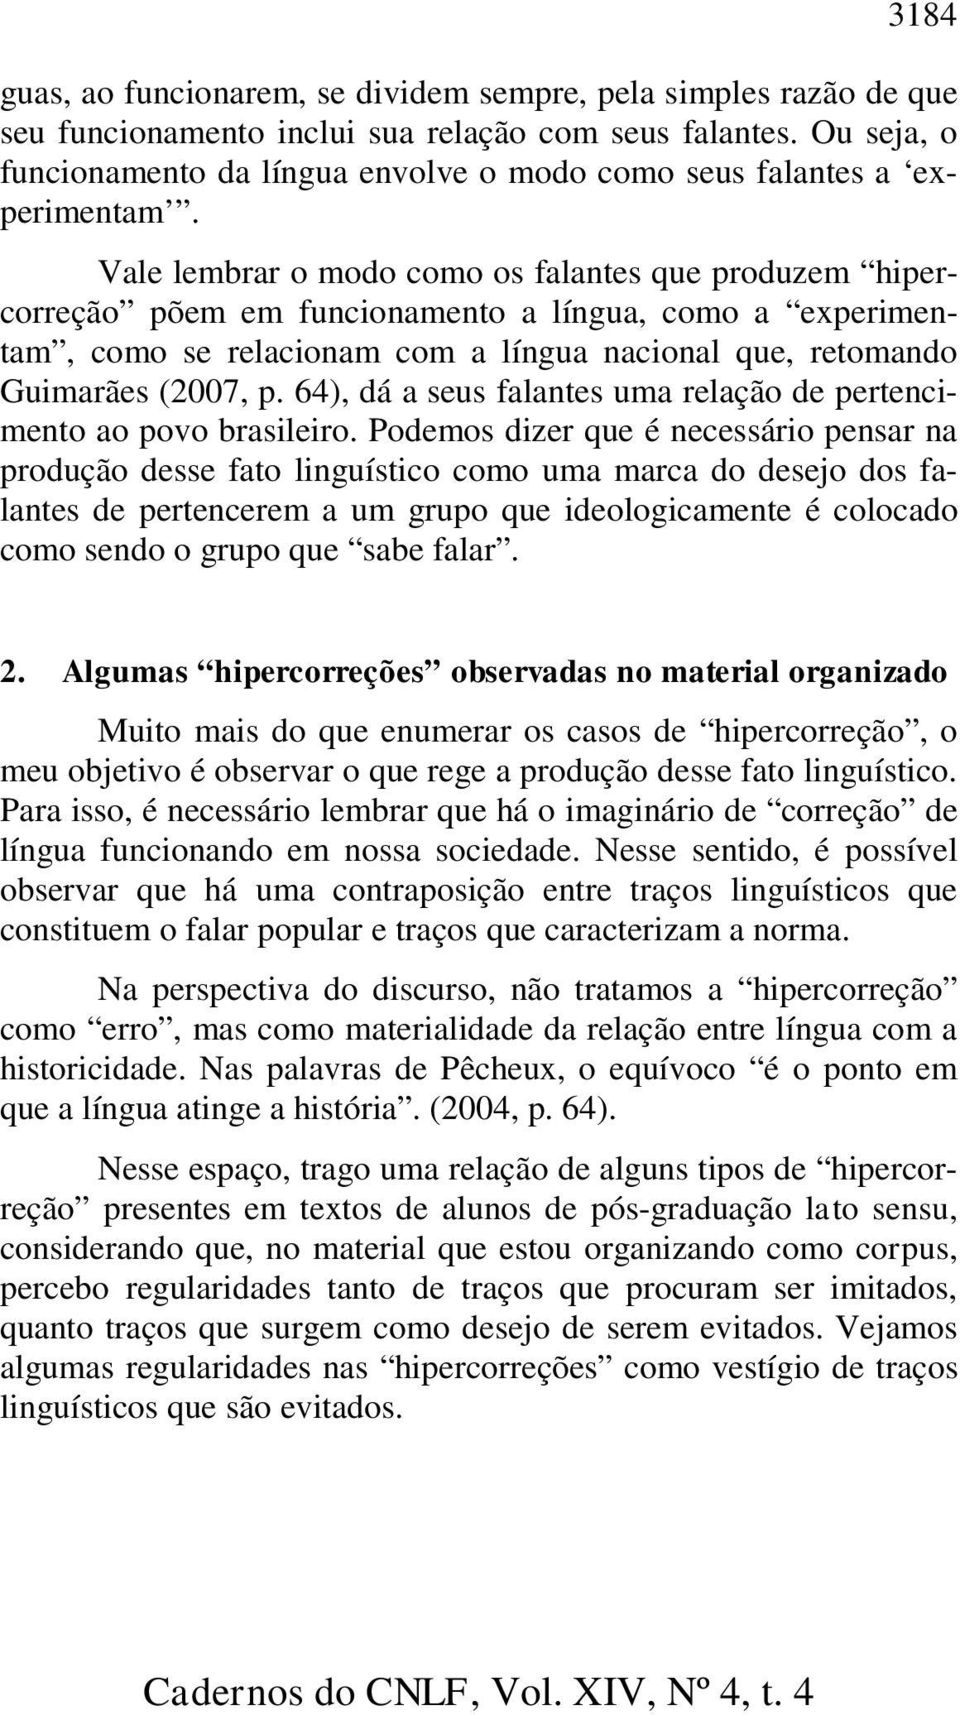 Vale lembrar o modo como os falantes que produzem hipercorreção põem em funcionamento a língua, como a experimentam, como se relacionam com a língua nacional que, retomando Guimarães (2007, p.